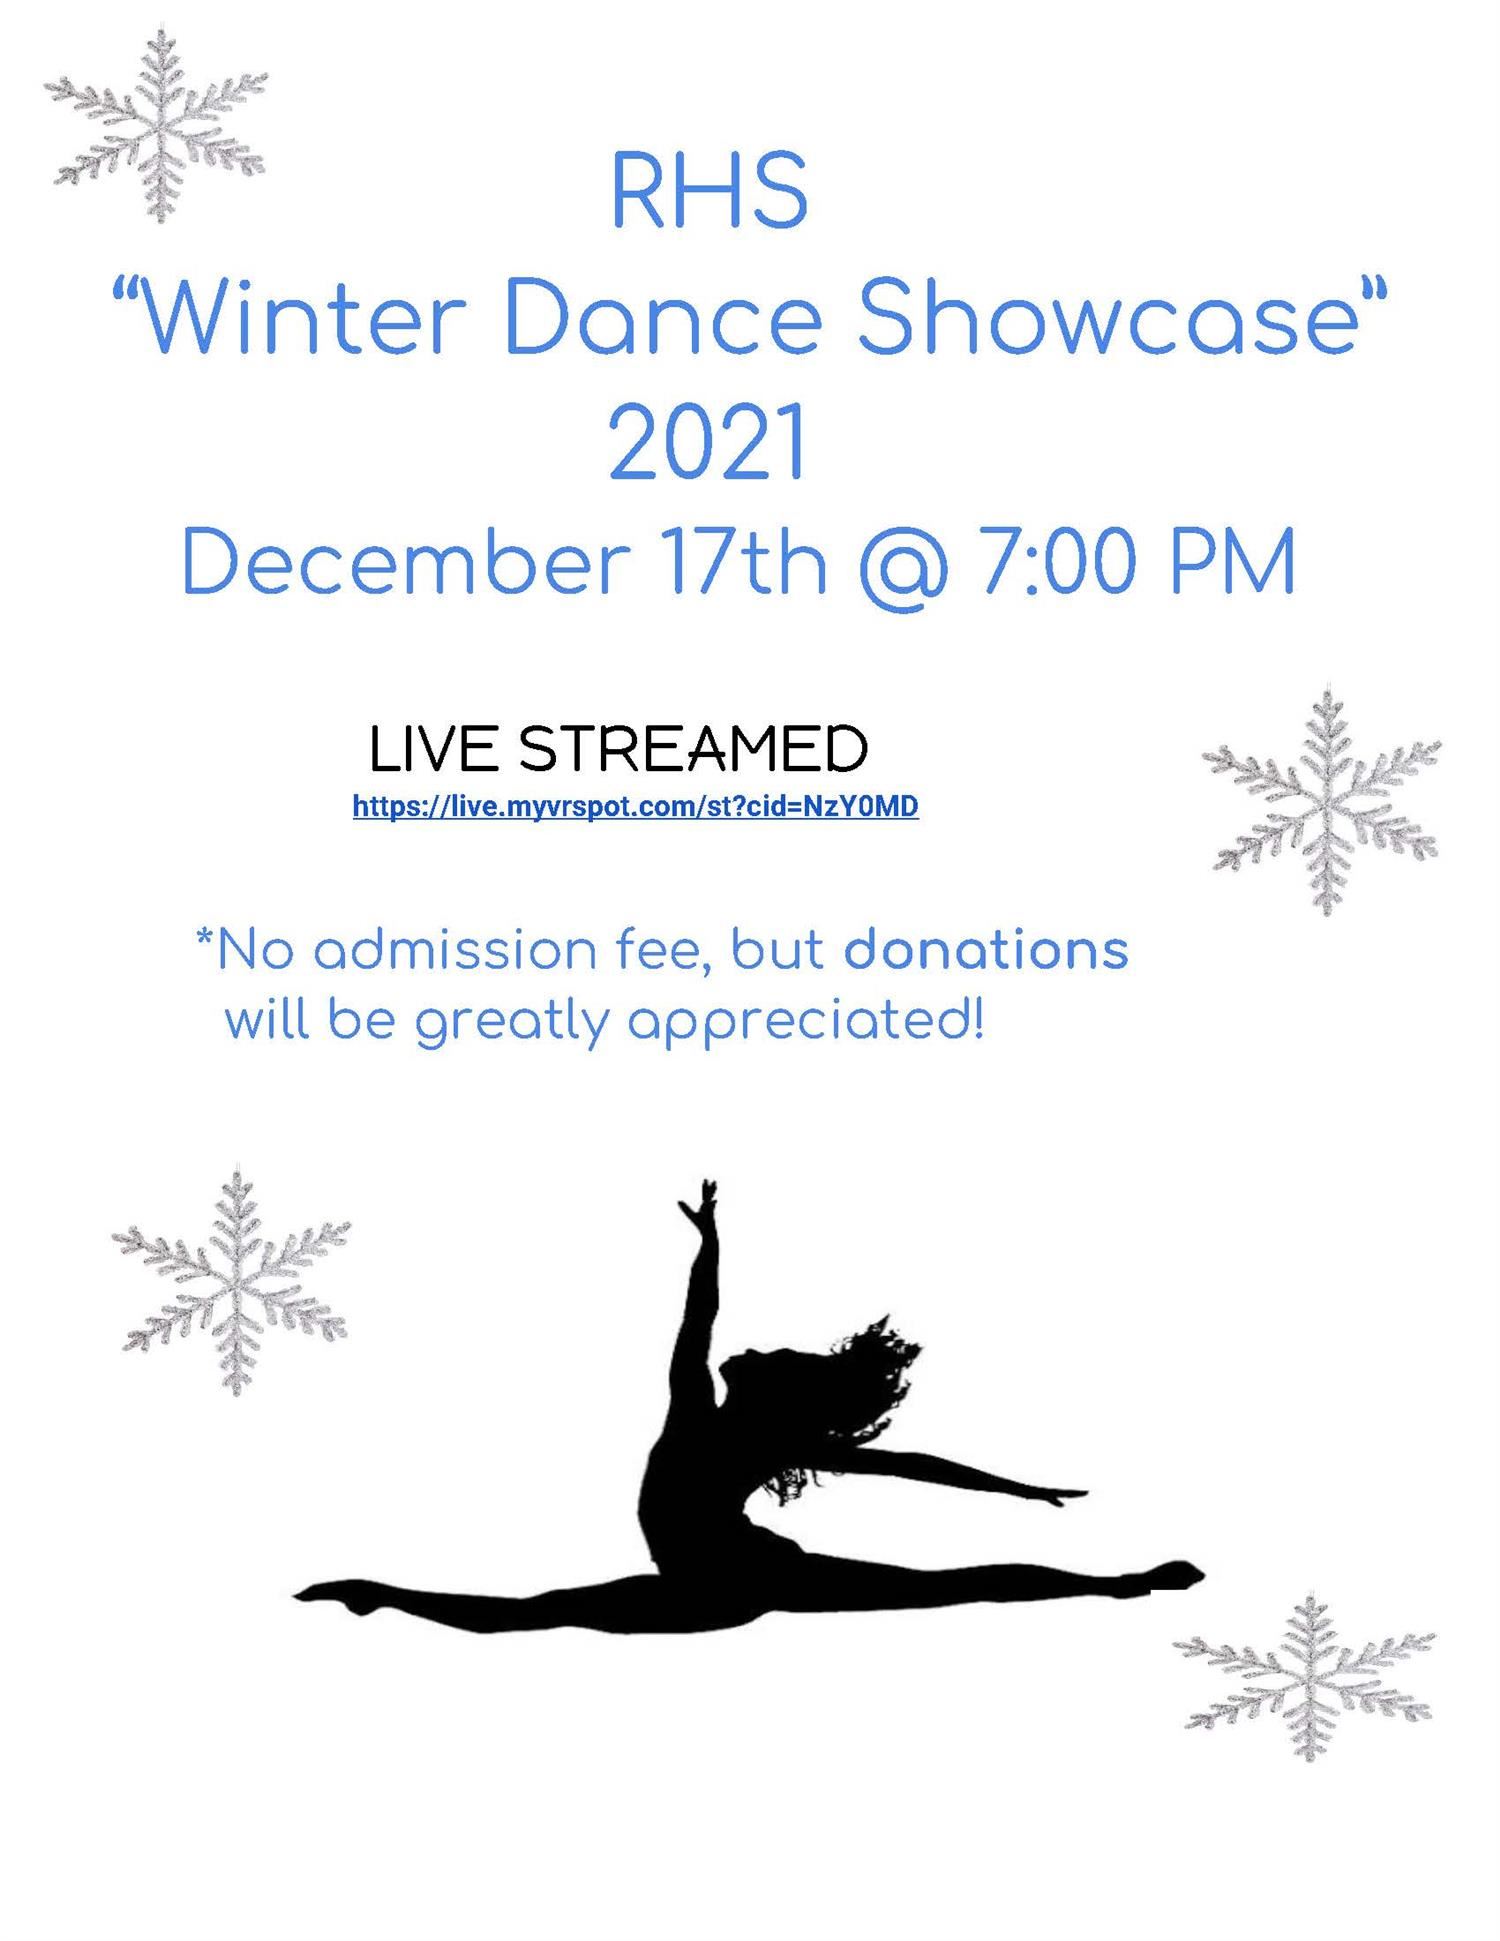 RHS Winter Dance Showcase Flyer